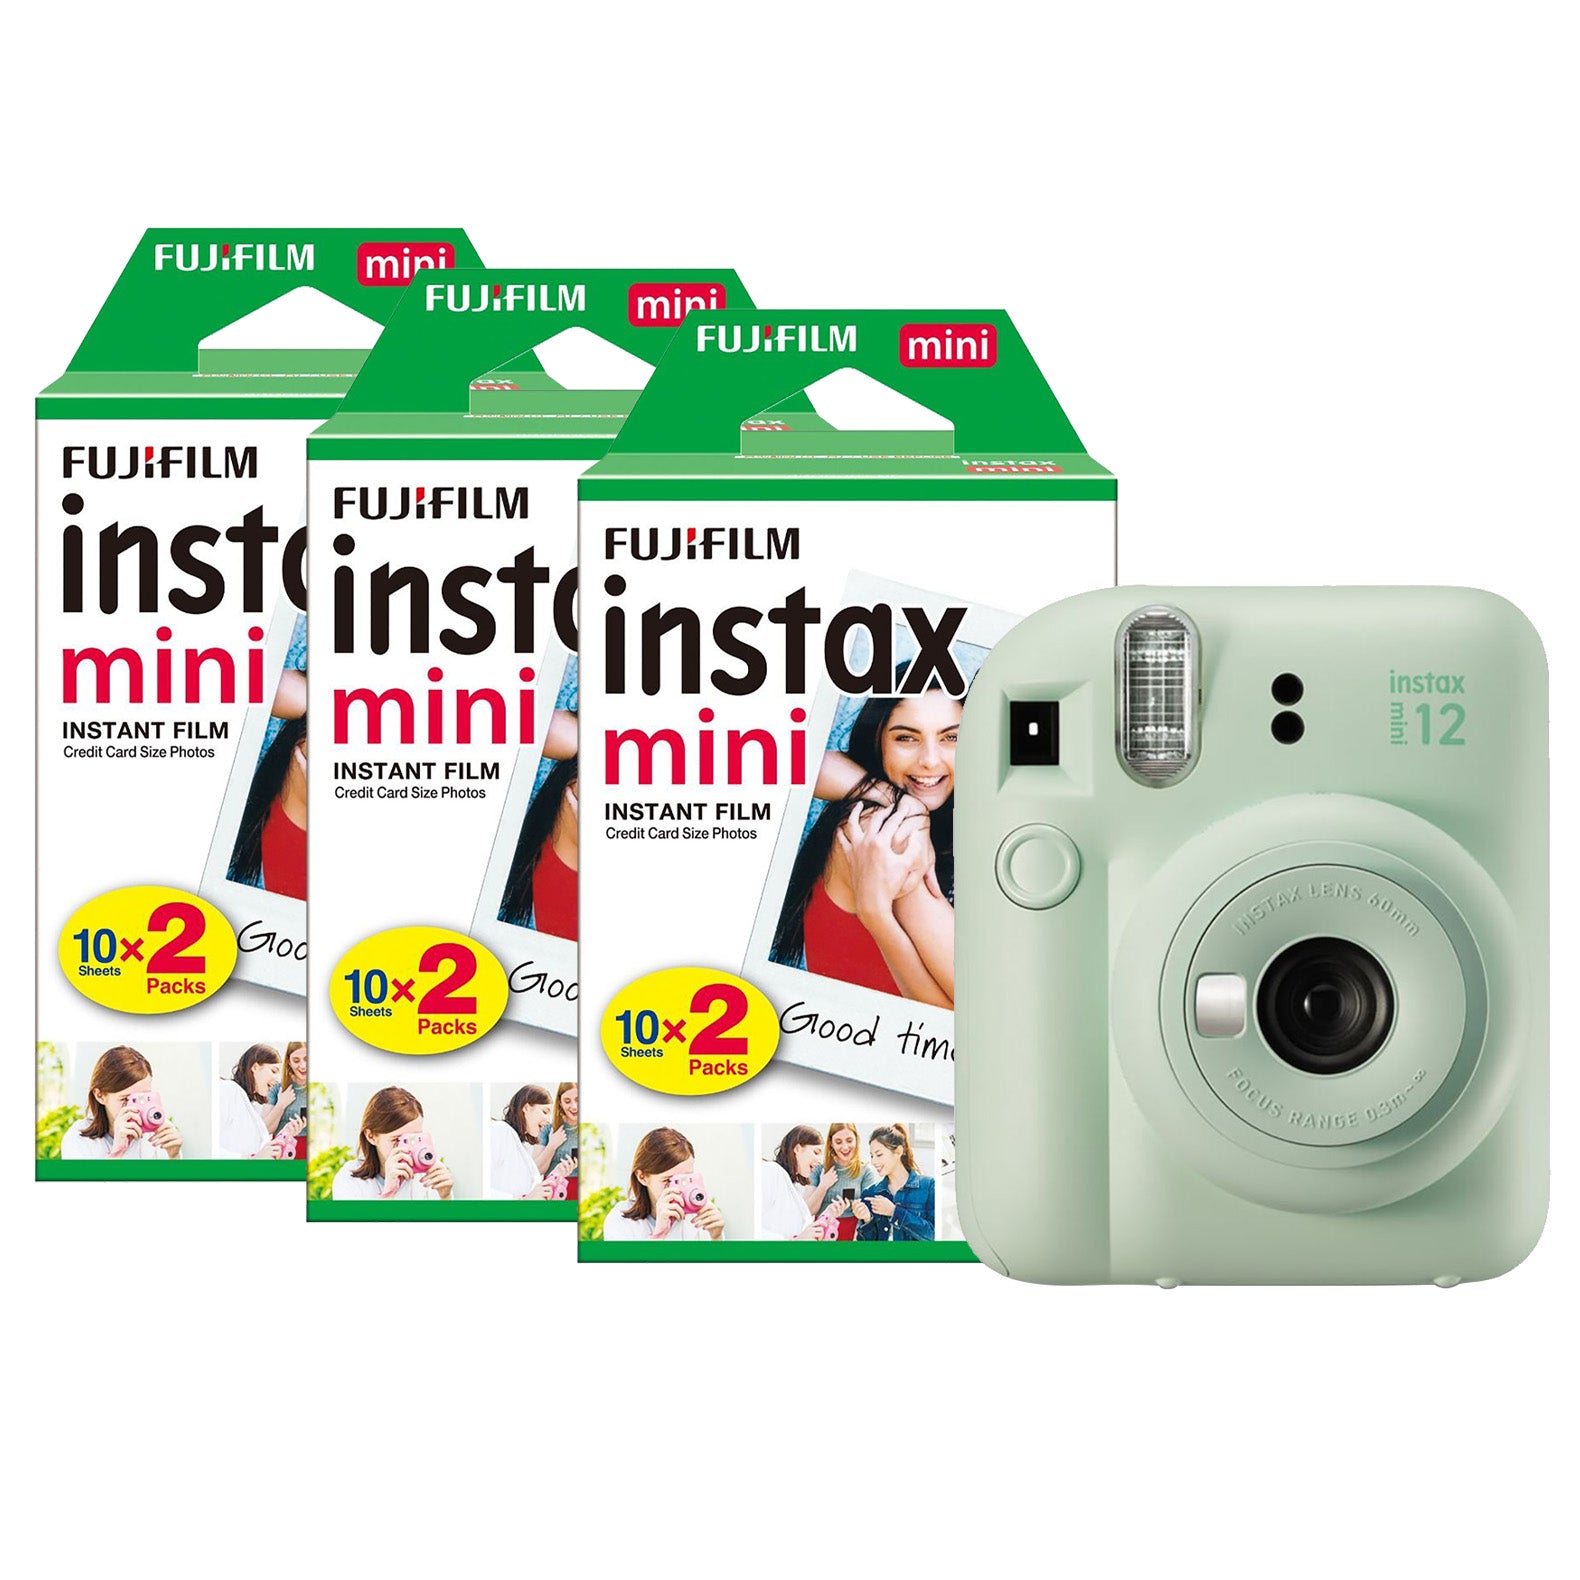 FUJIFILM instax mini 8 instant camera light green